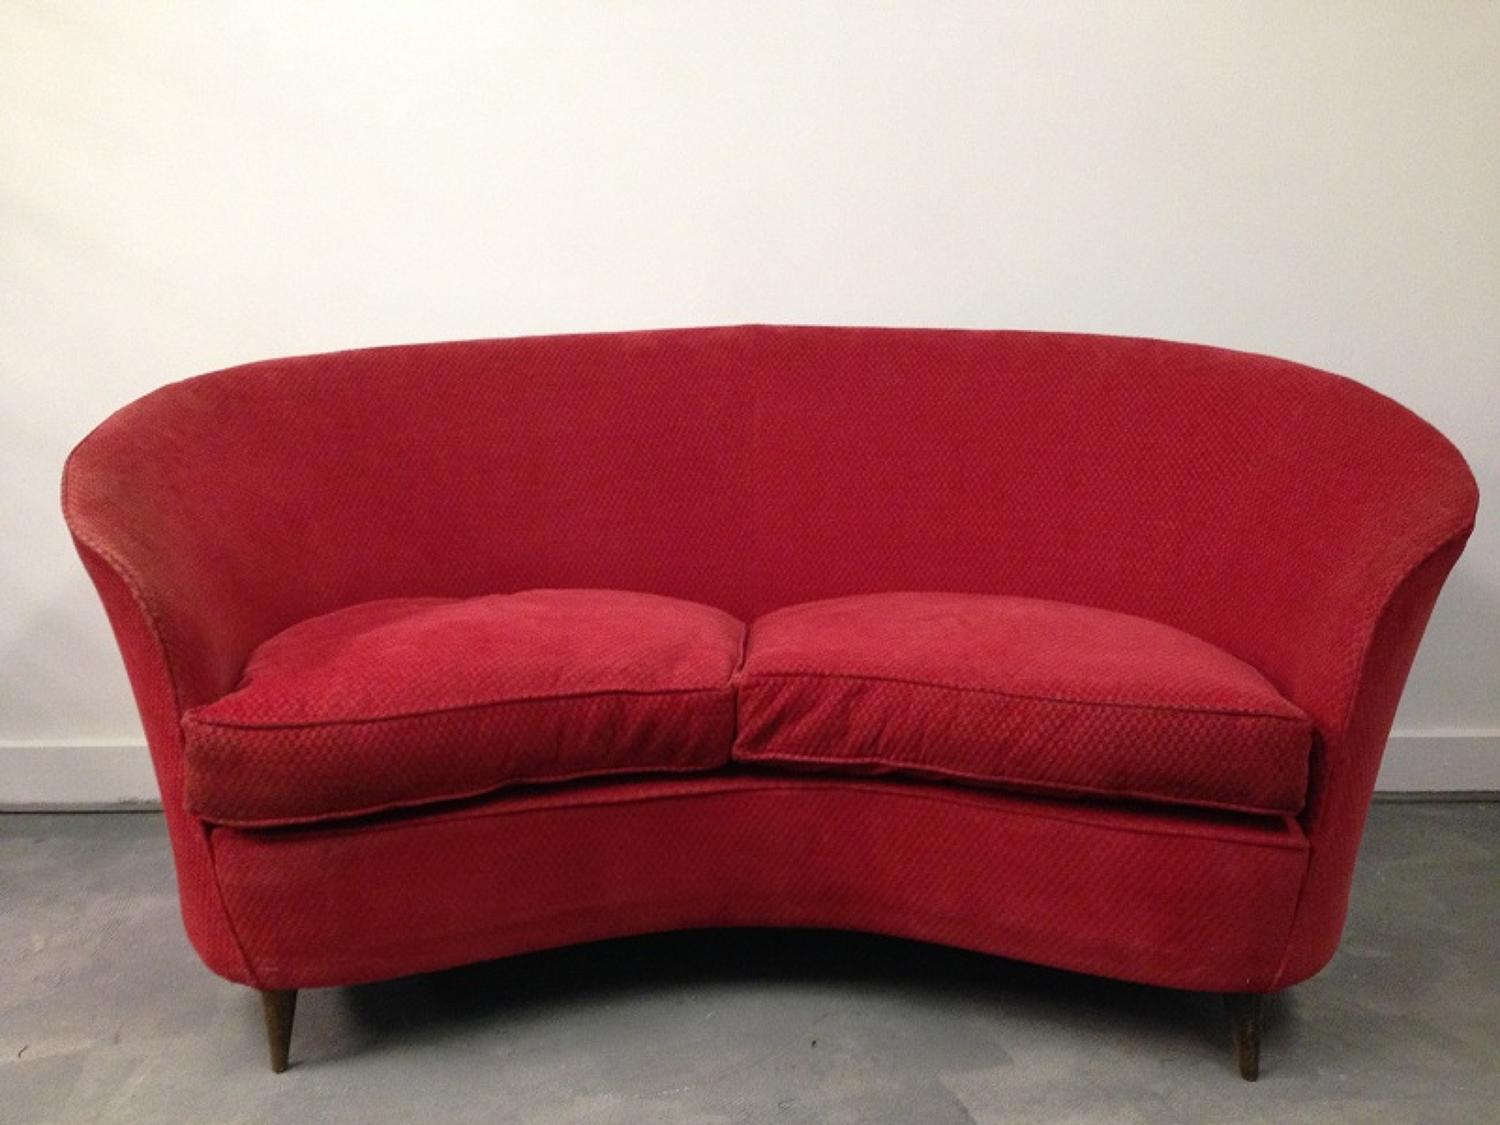 1950s Italian curved sofa